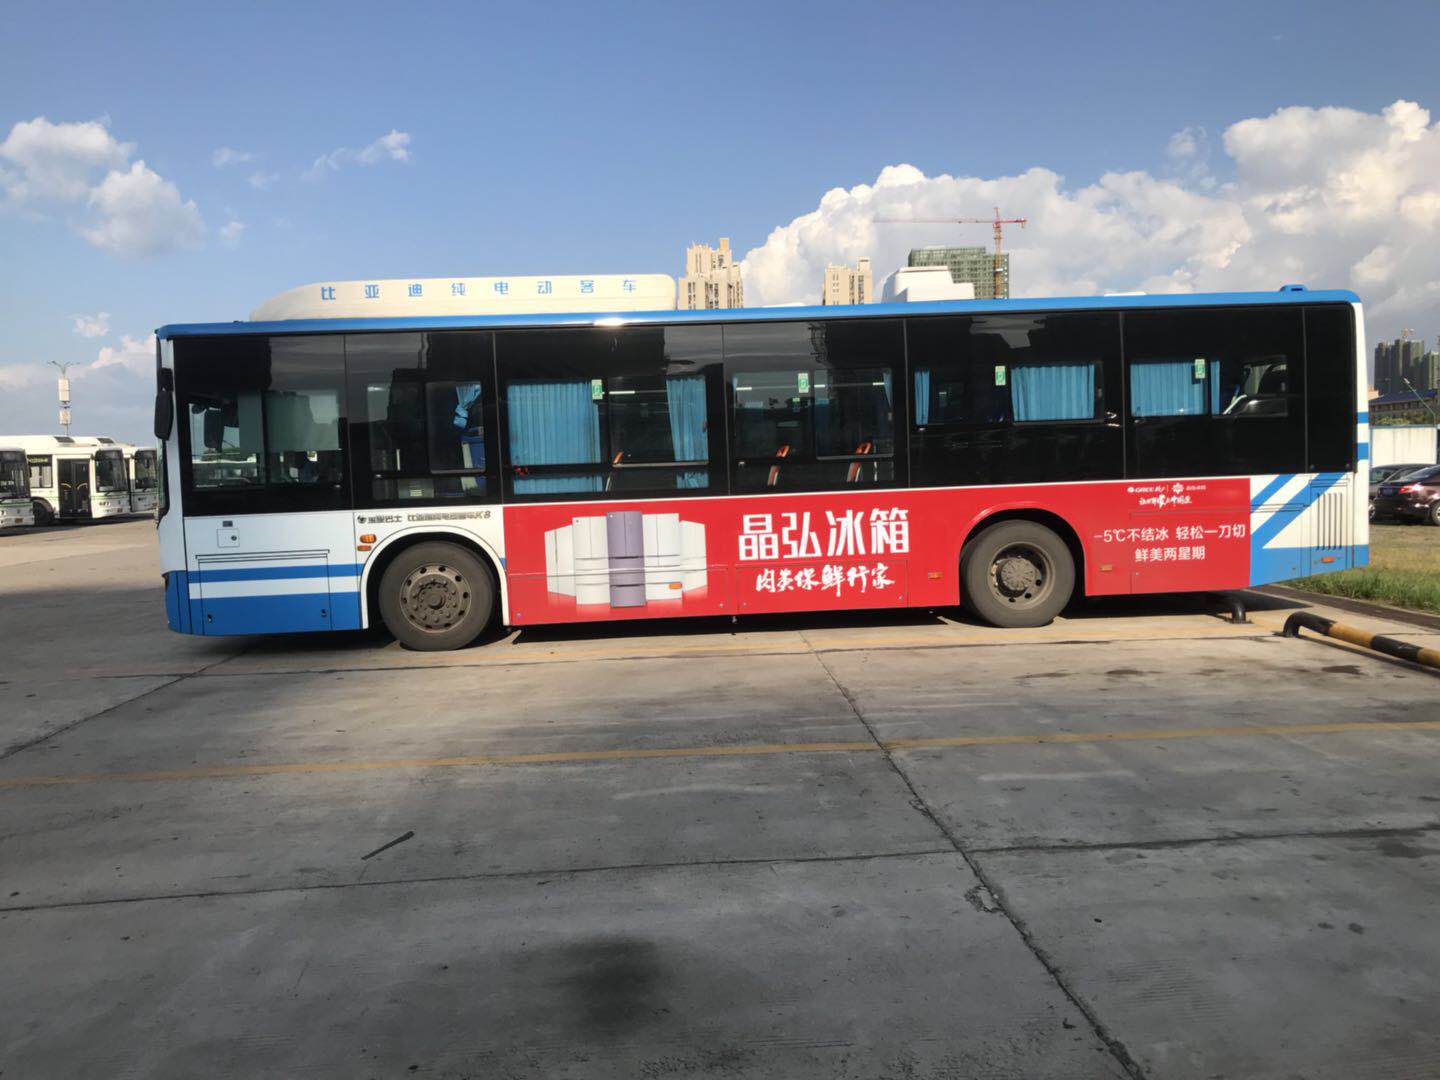 供应长沙公交车身广告(外侧+门侧+车尾)，[吾道文化]长沙公交广告专家!图片